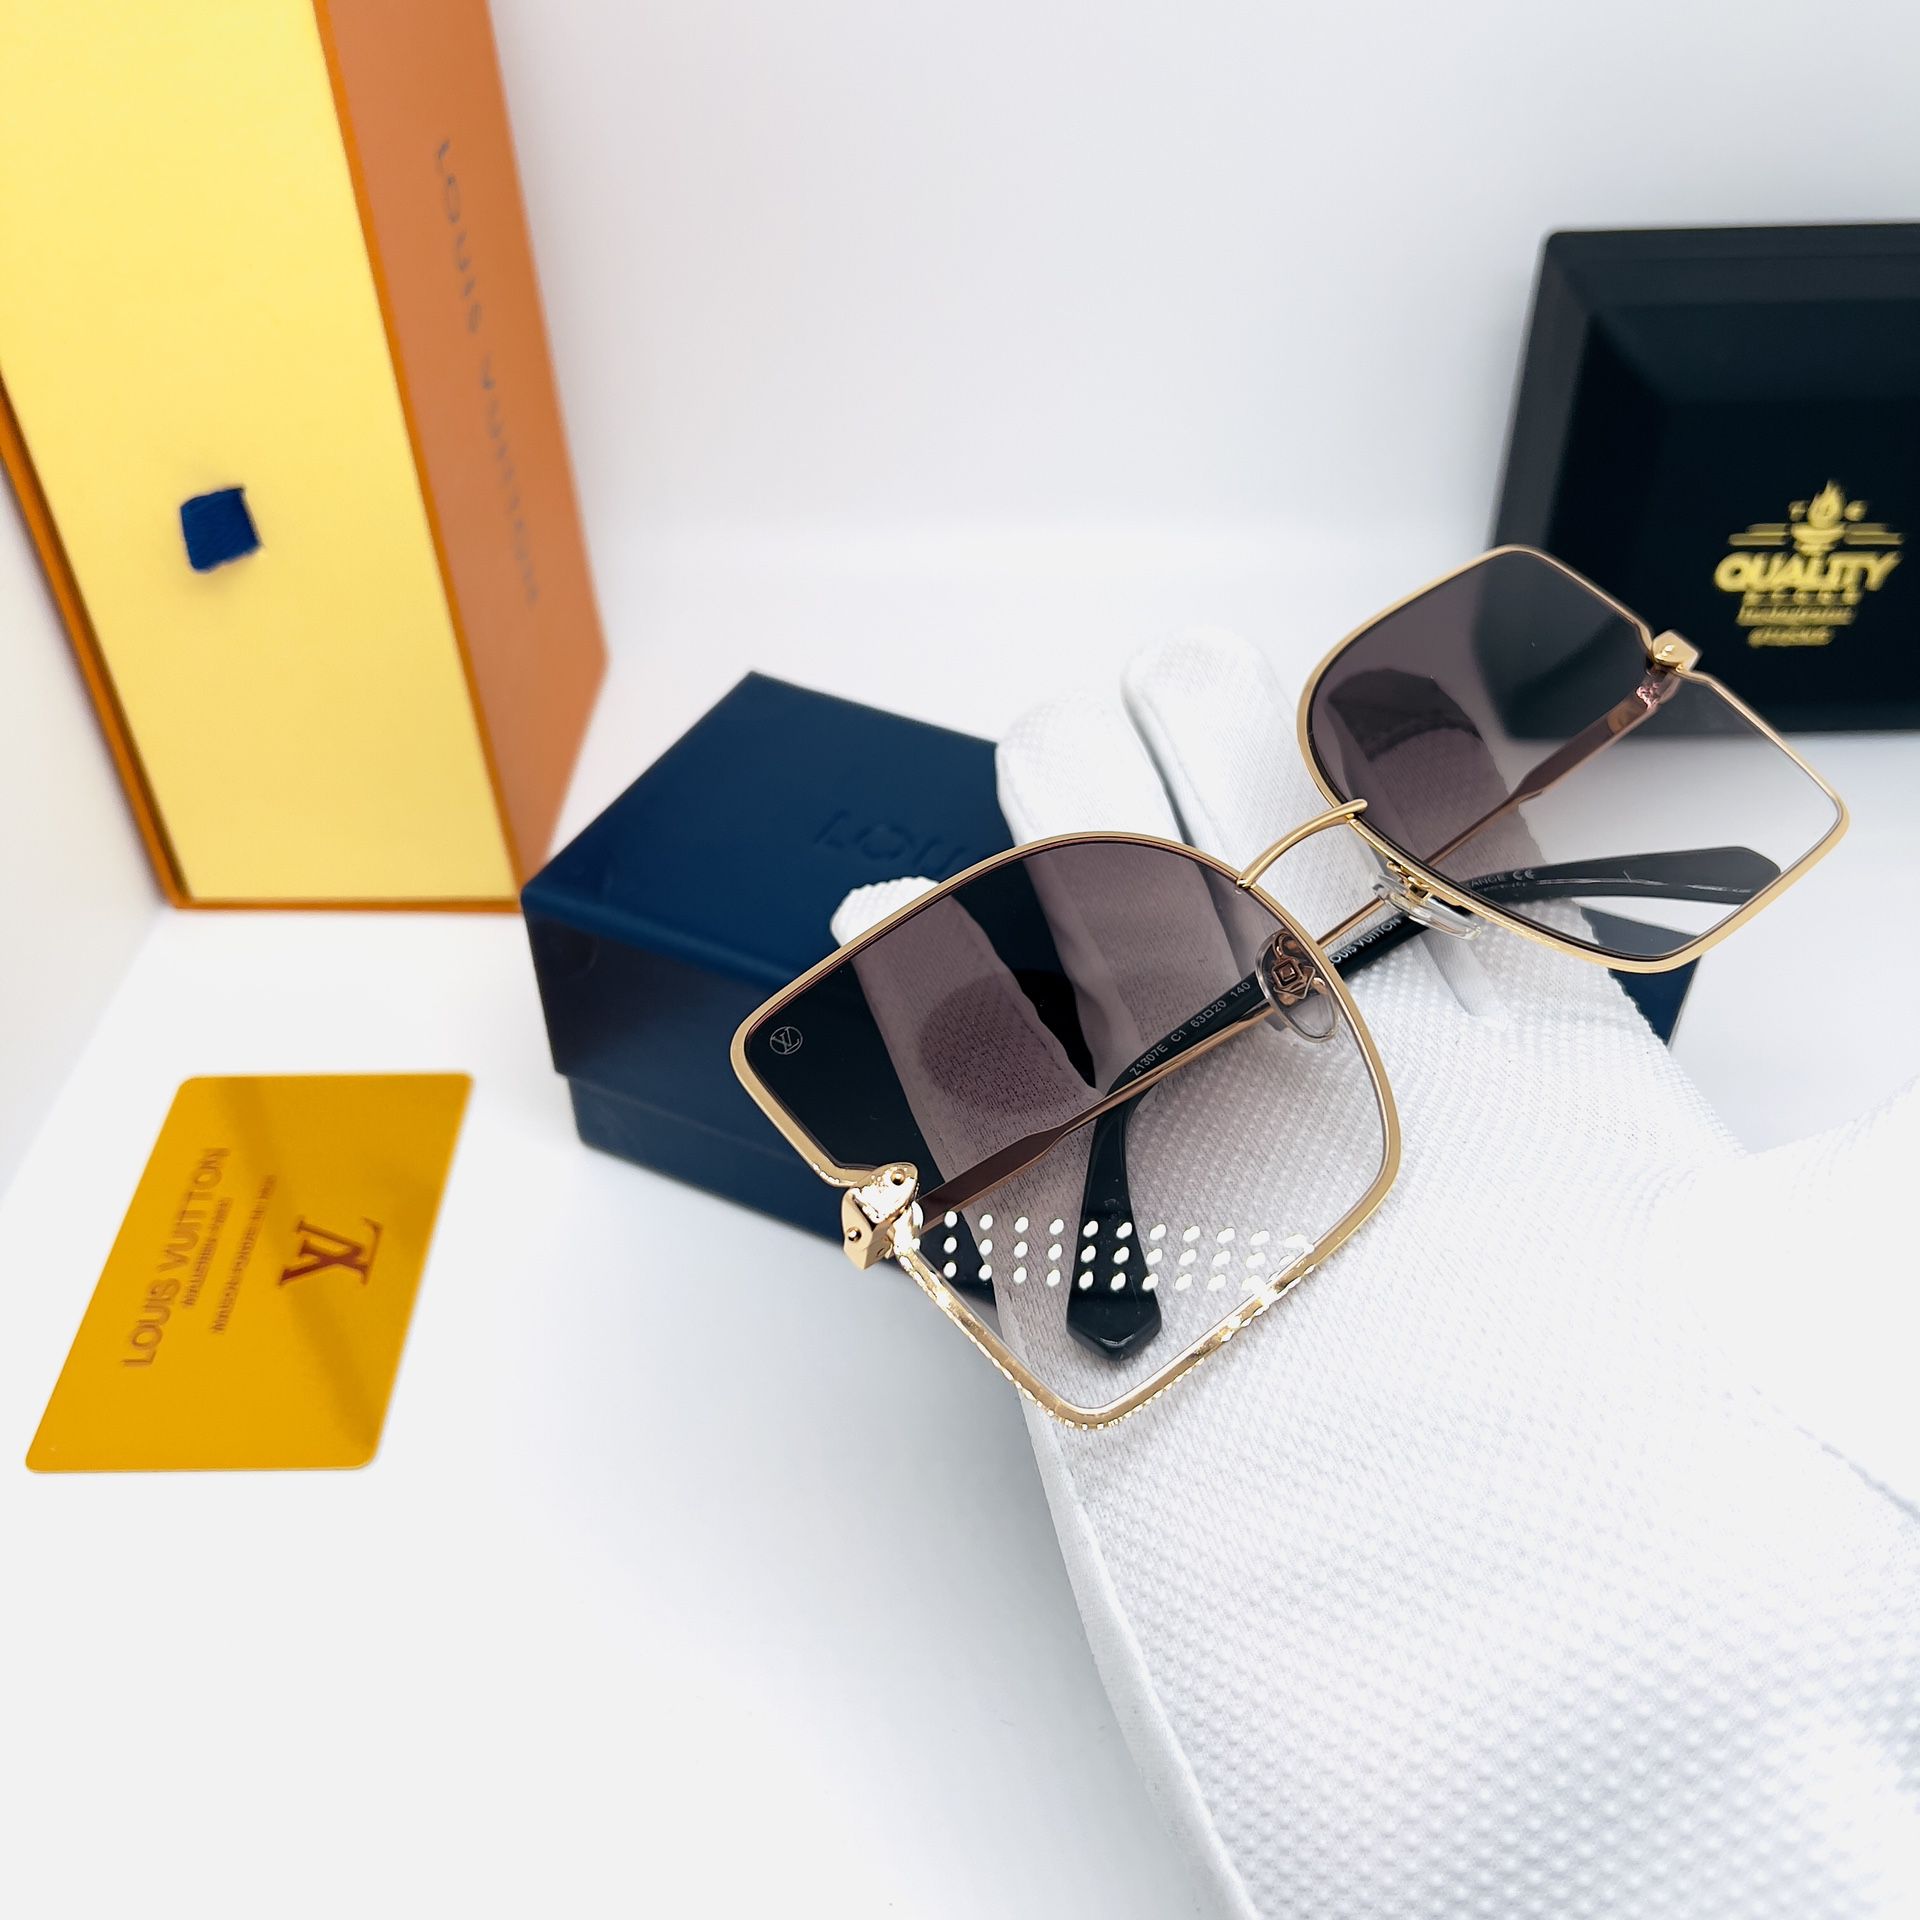 LV Black Sunglasses for Sale in Cape Coral, FL - OfferUp